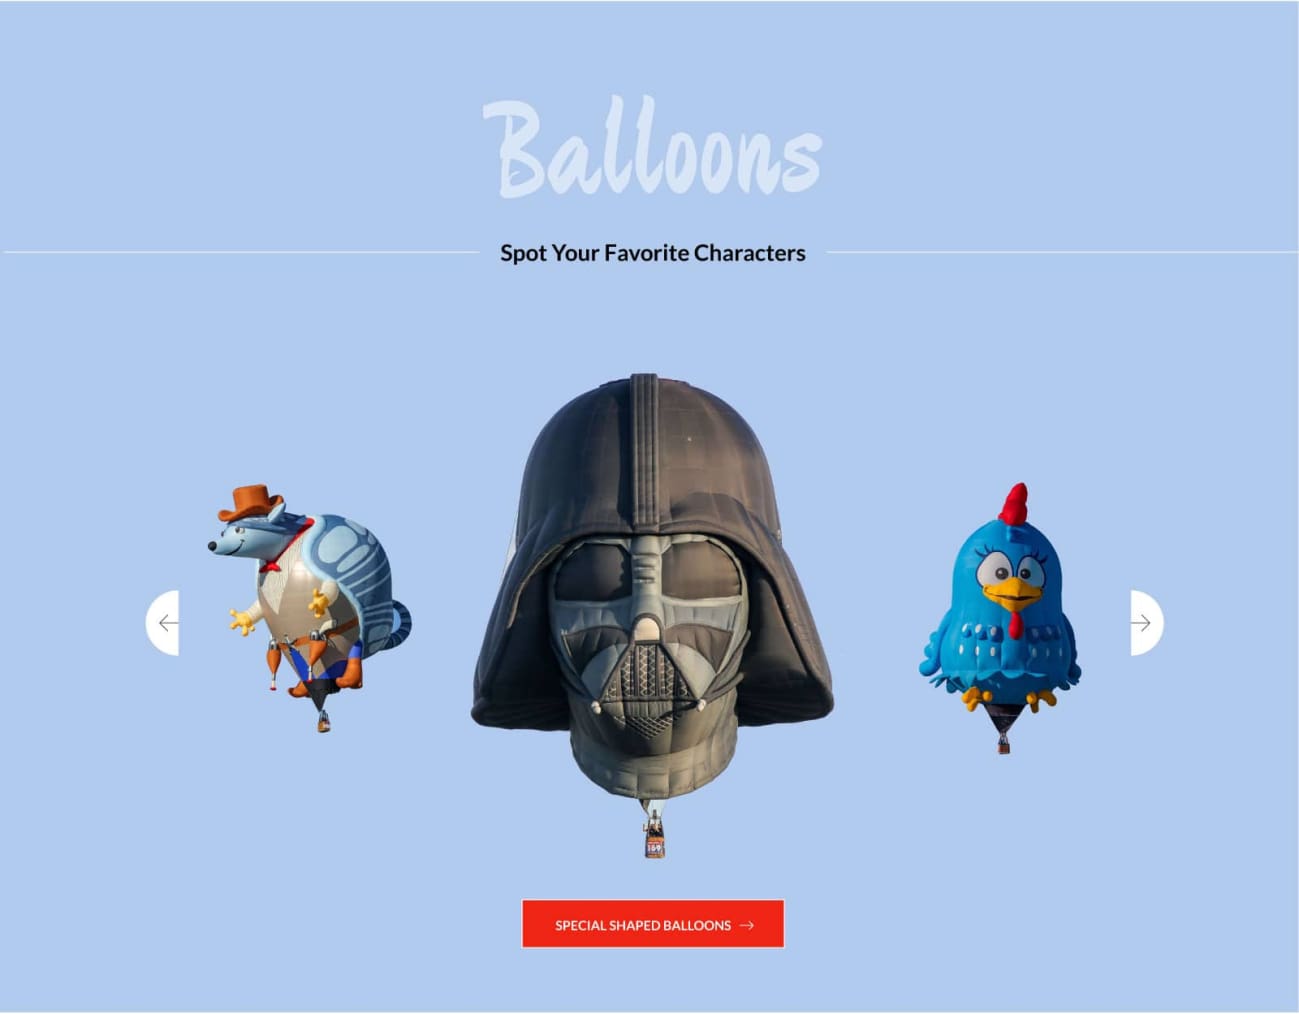 Balloon Fiesta ballon gallery design